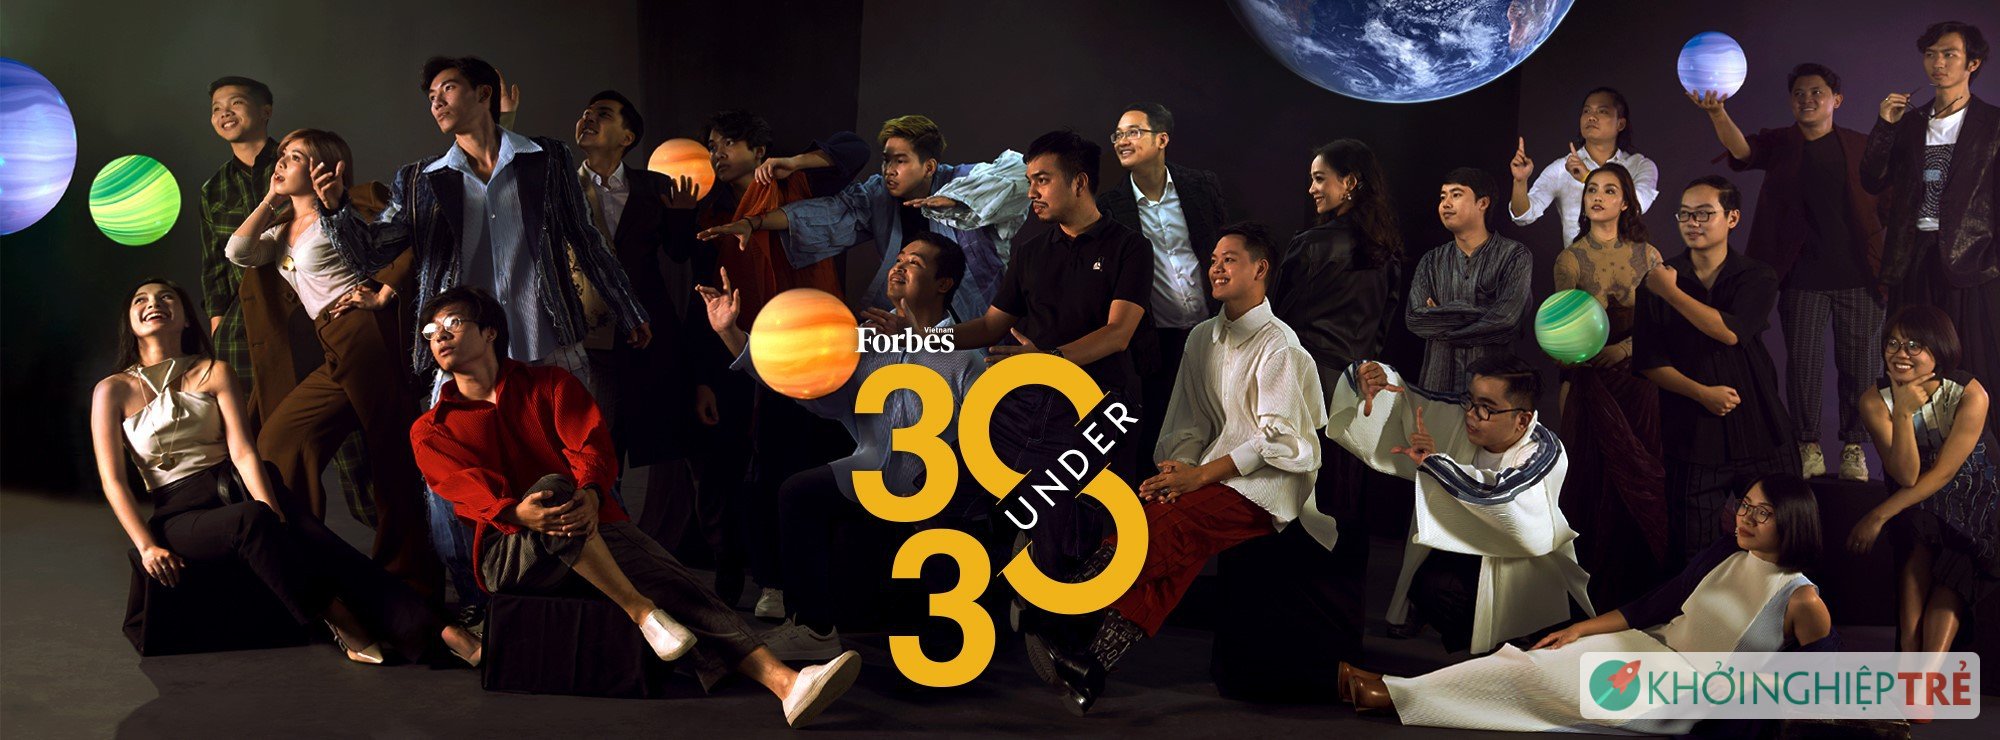 Tạp chí Forbes Vietnam công bố danh sách 30 Under 30 Việt Nam trong năm 2020 1